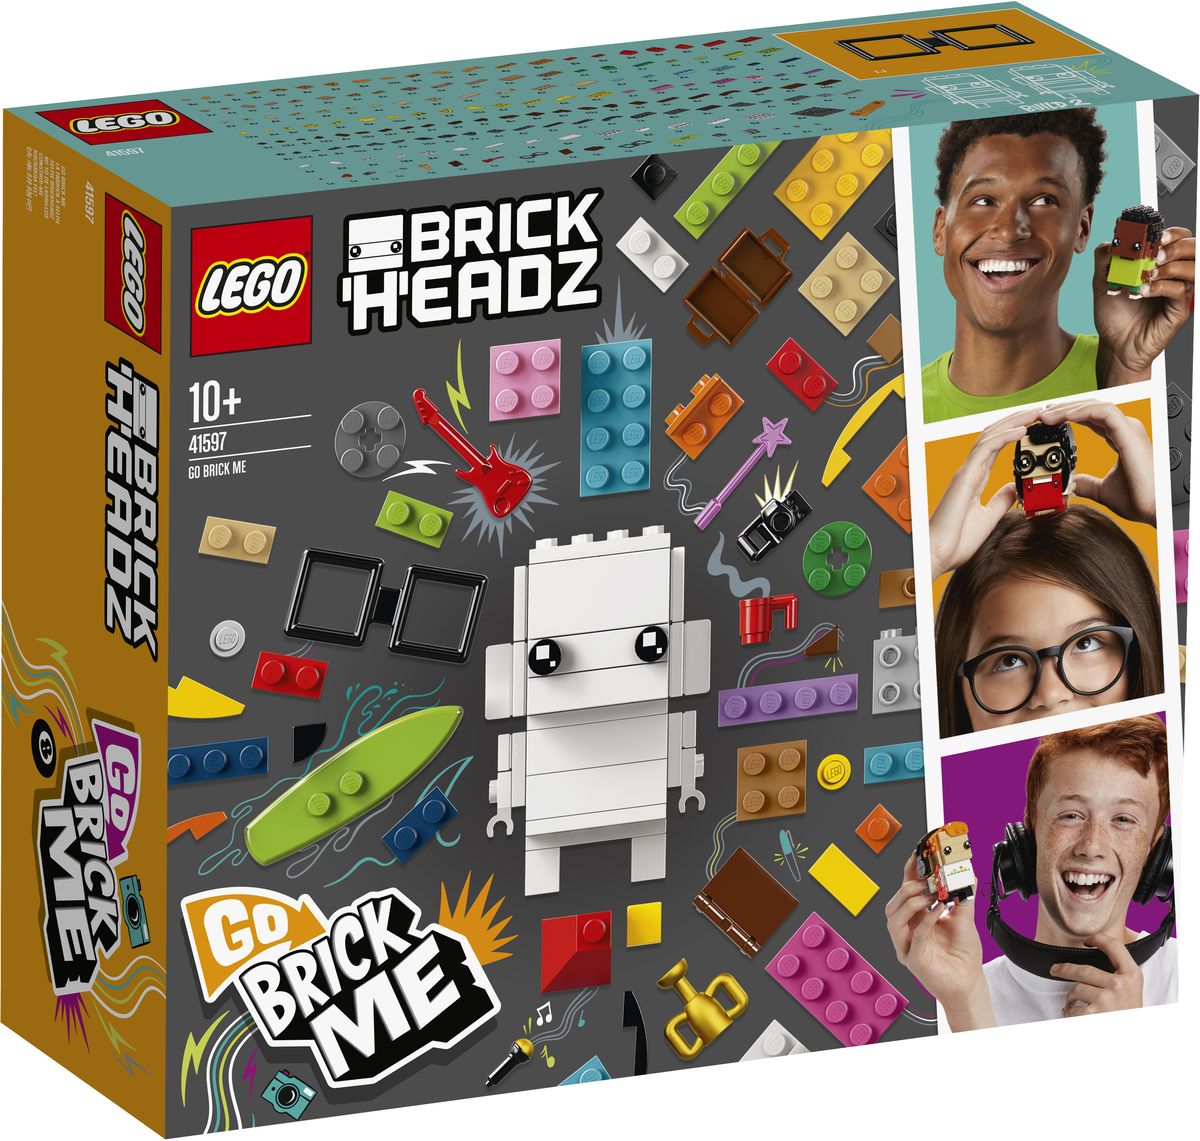 LEGO BrickHeadz Конструктор Go Brick Me